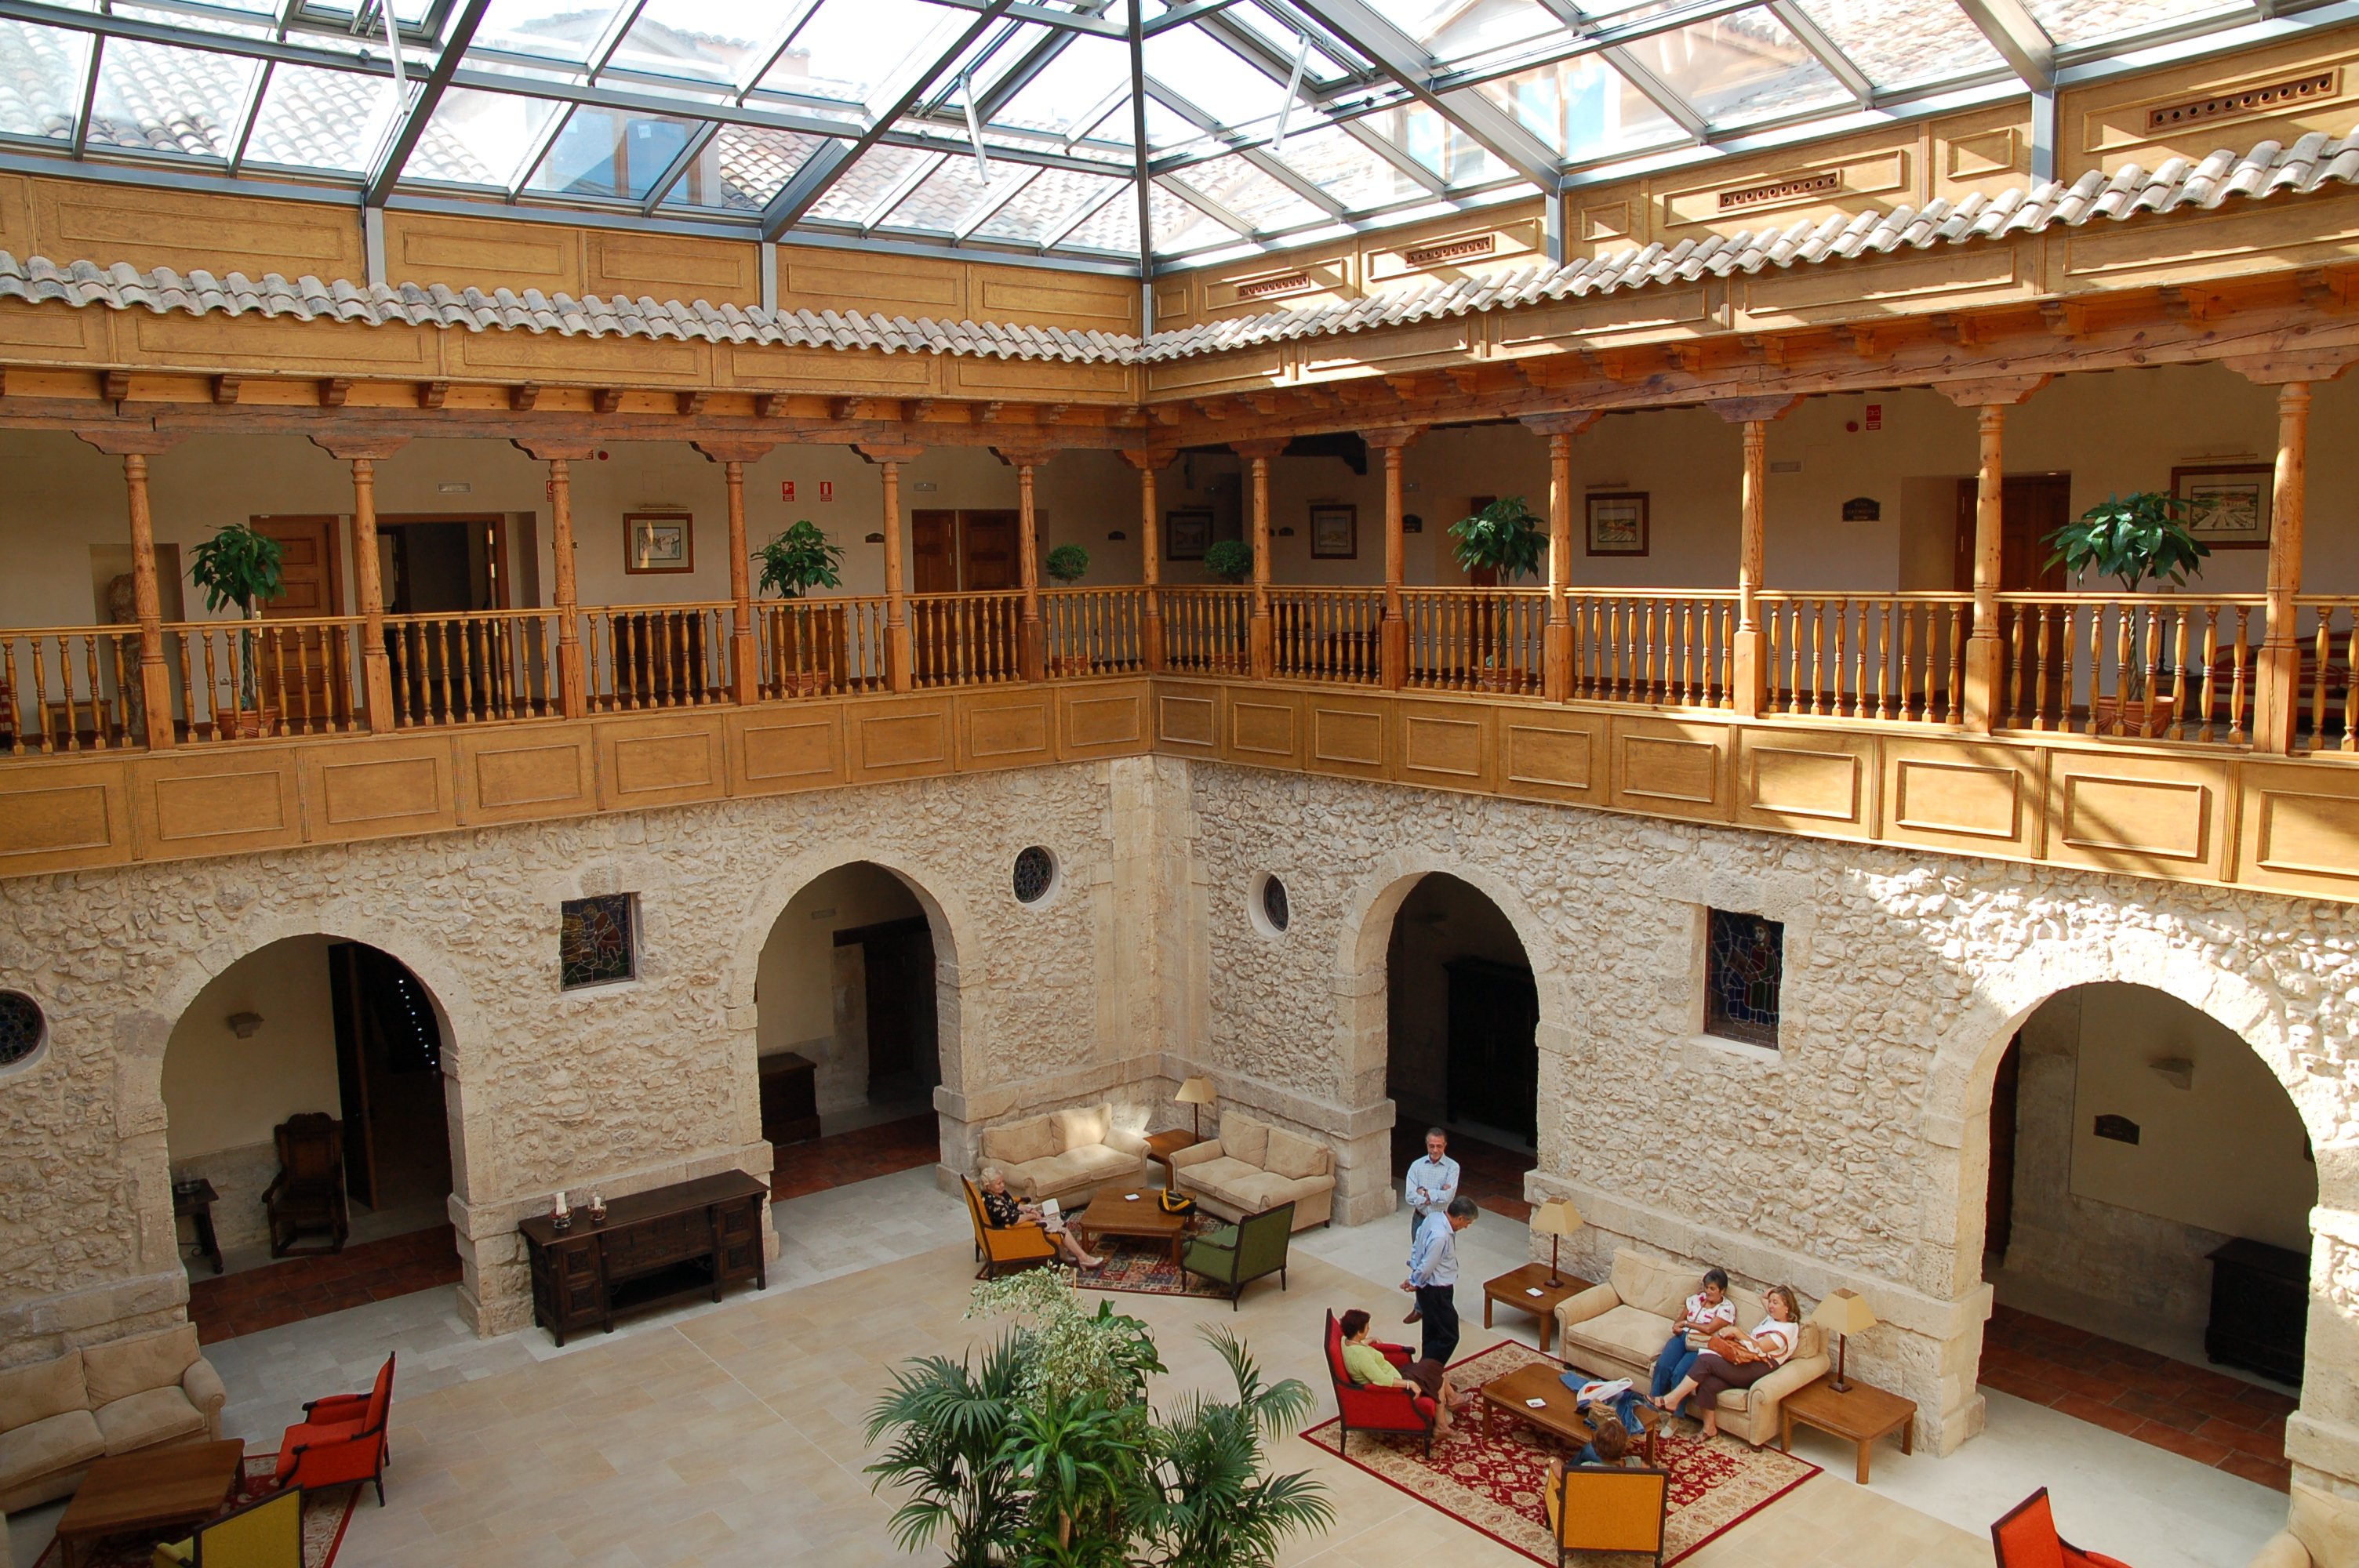 Sinceramente cuero Colectivo Hotel Spa Convento Las Claras en Peñafiel: 8 opiniones, 13 fotos, precio,  ofertas y reserva - Minube.com